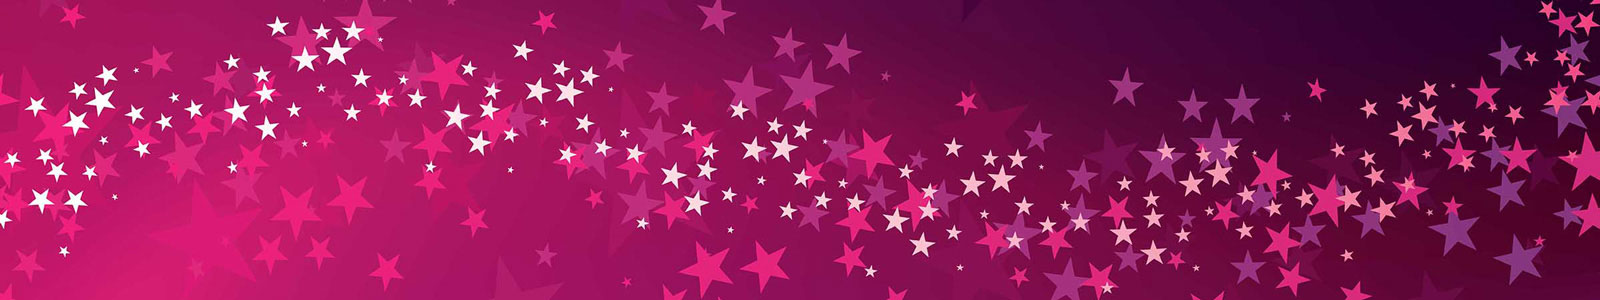 №3687 - Звезды на пурпурном фоне